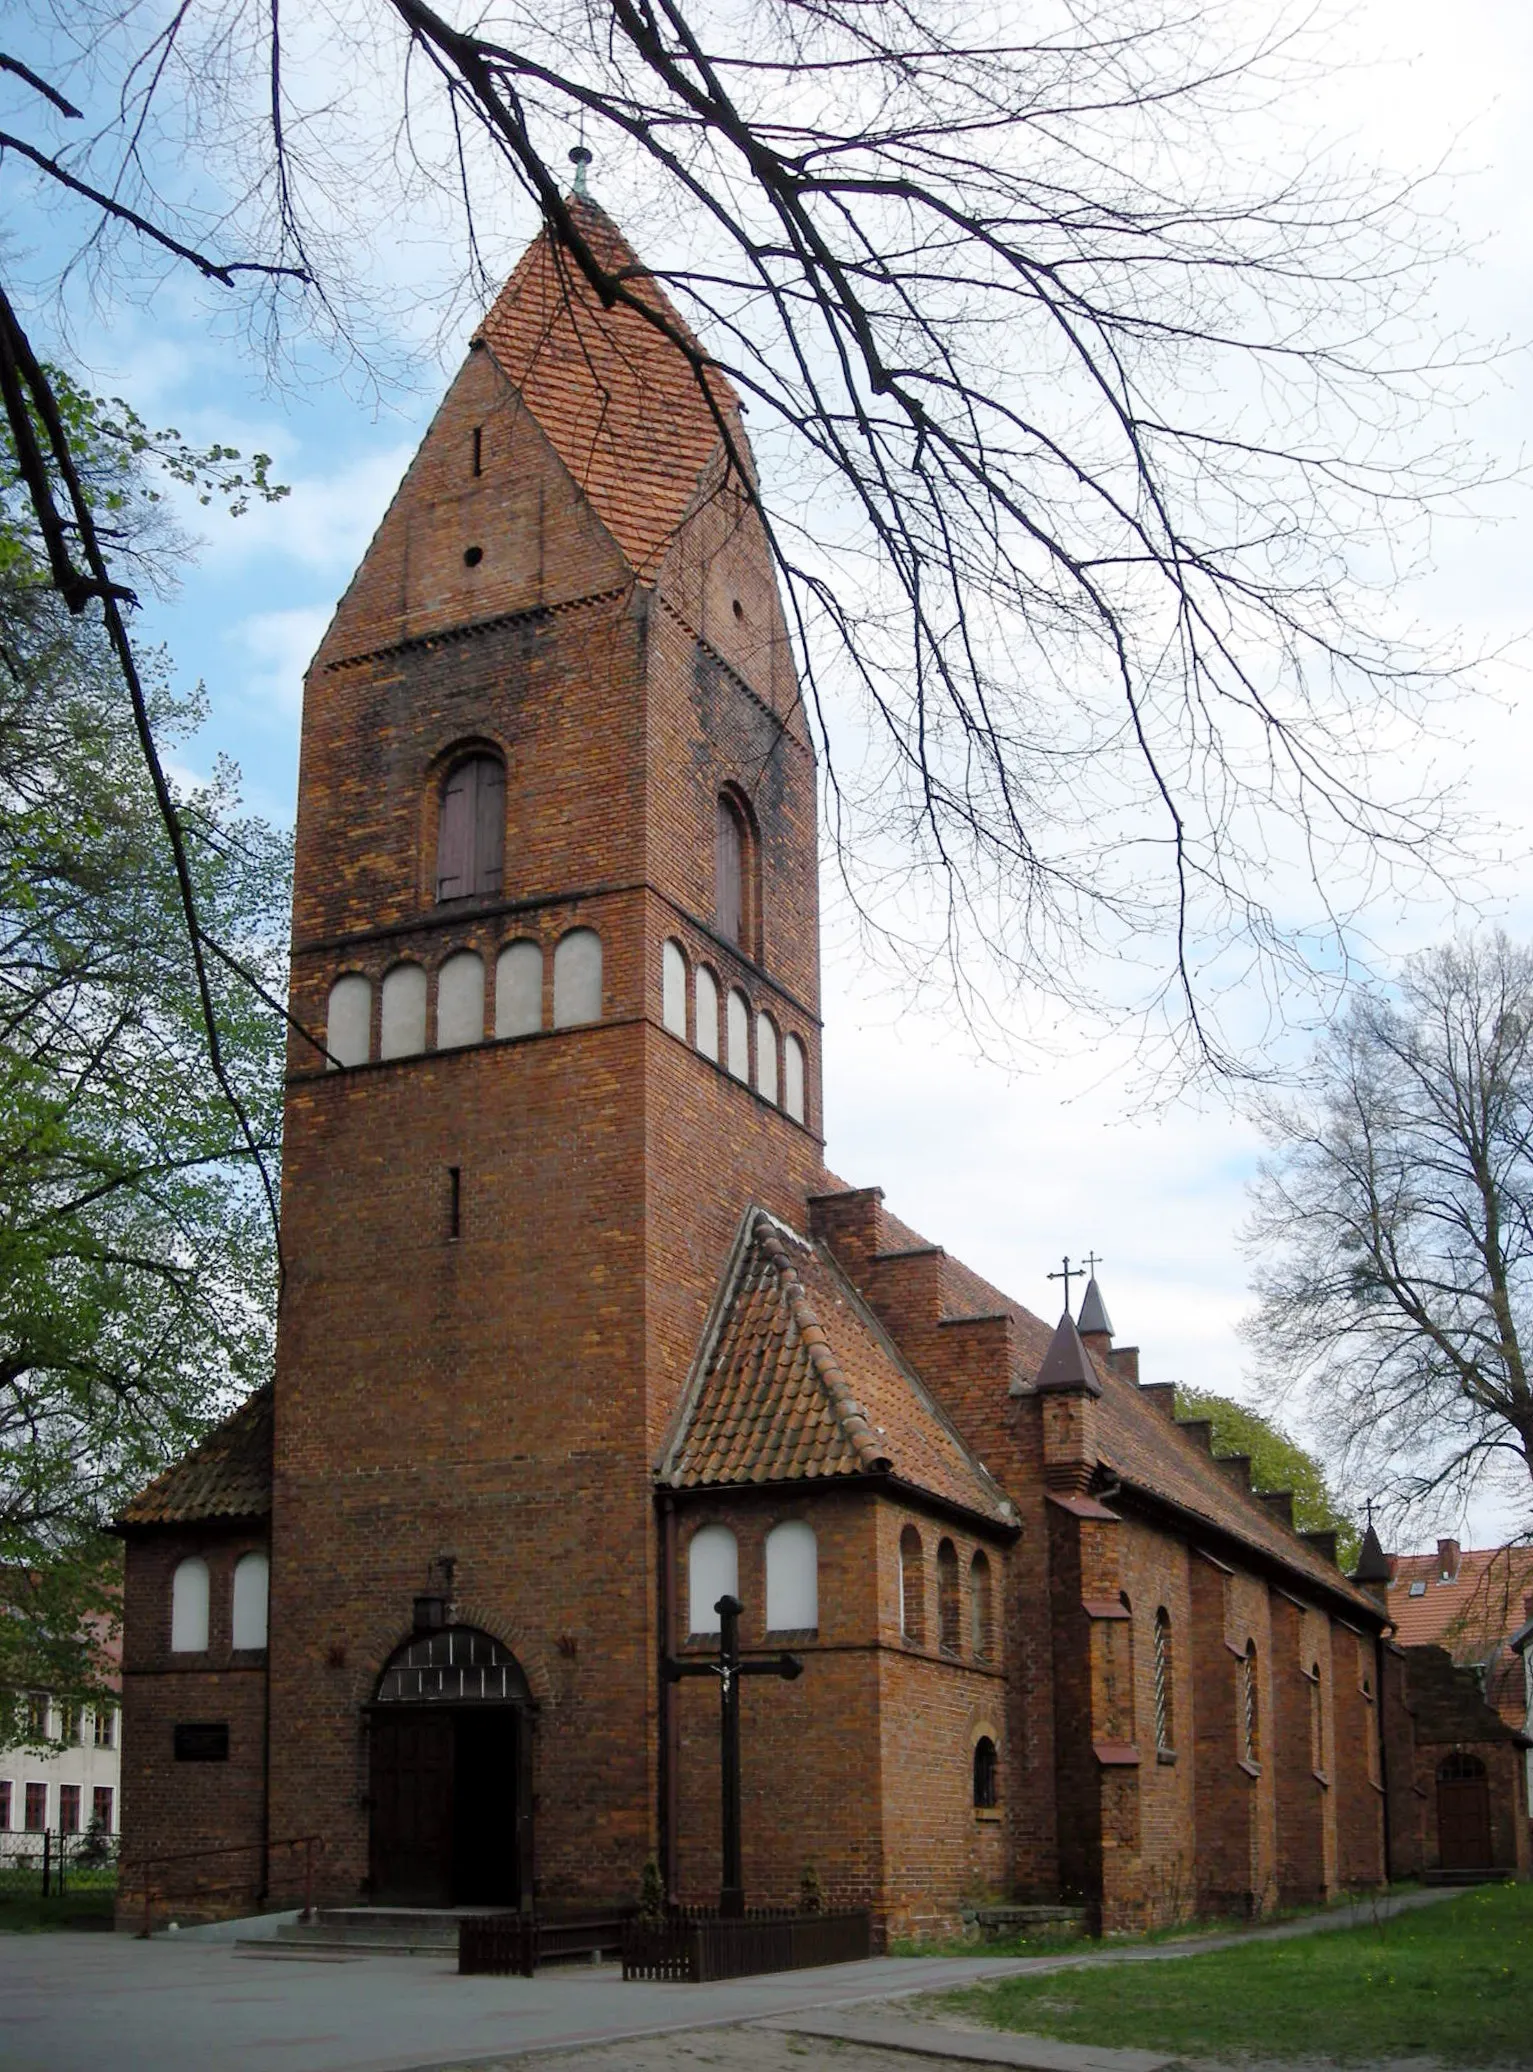 Photo showing: The church in Zławieś Wielka, Poland.